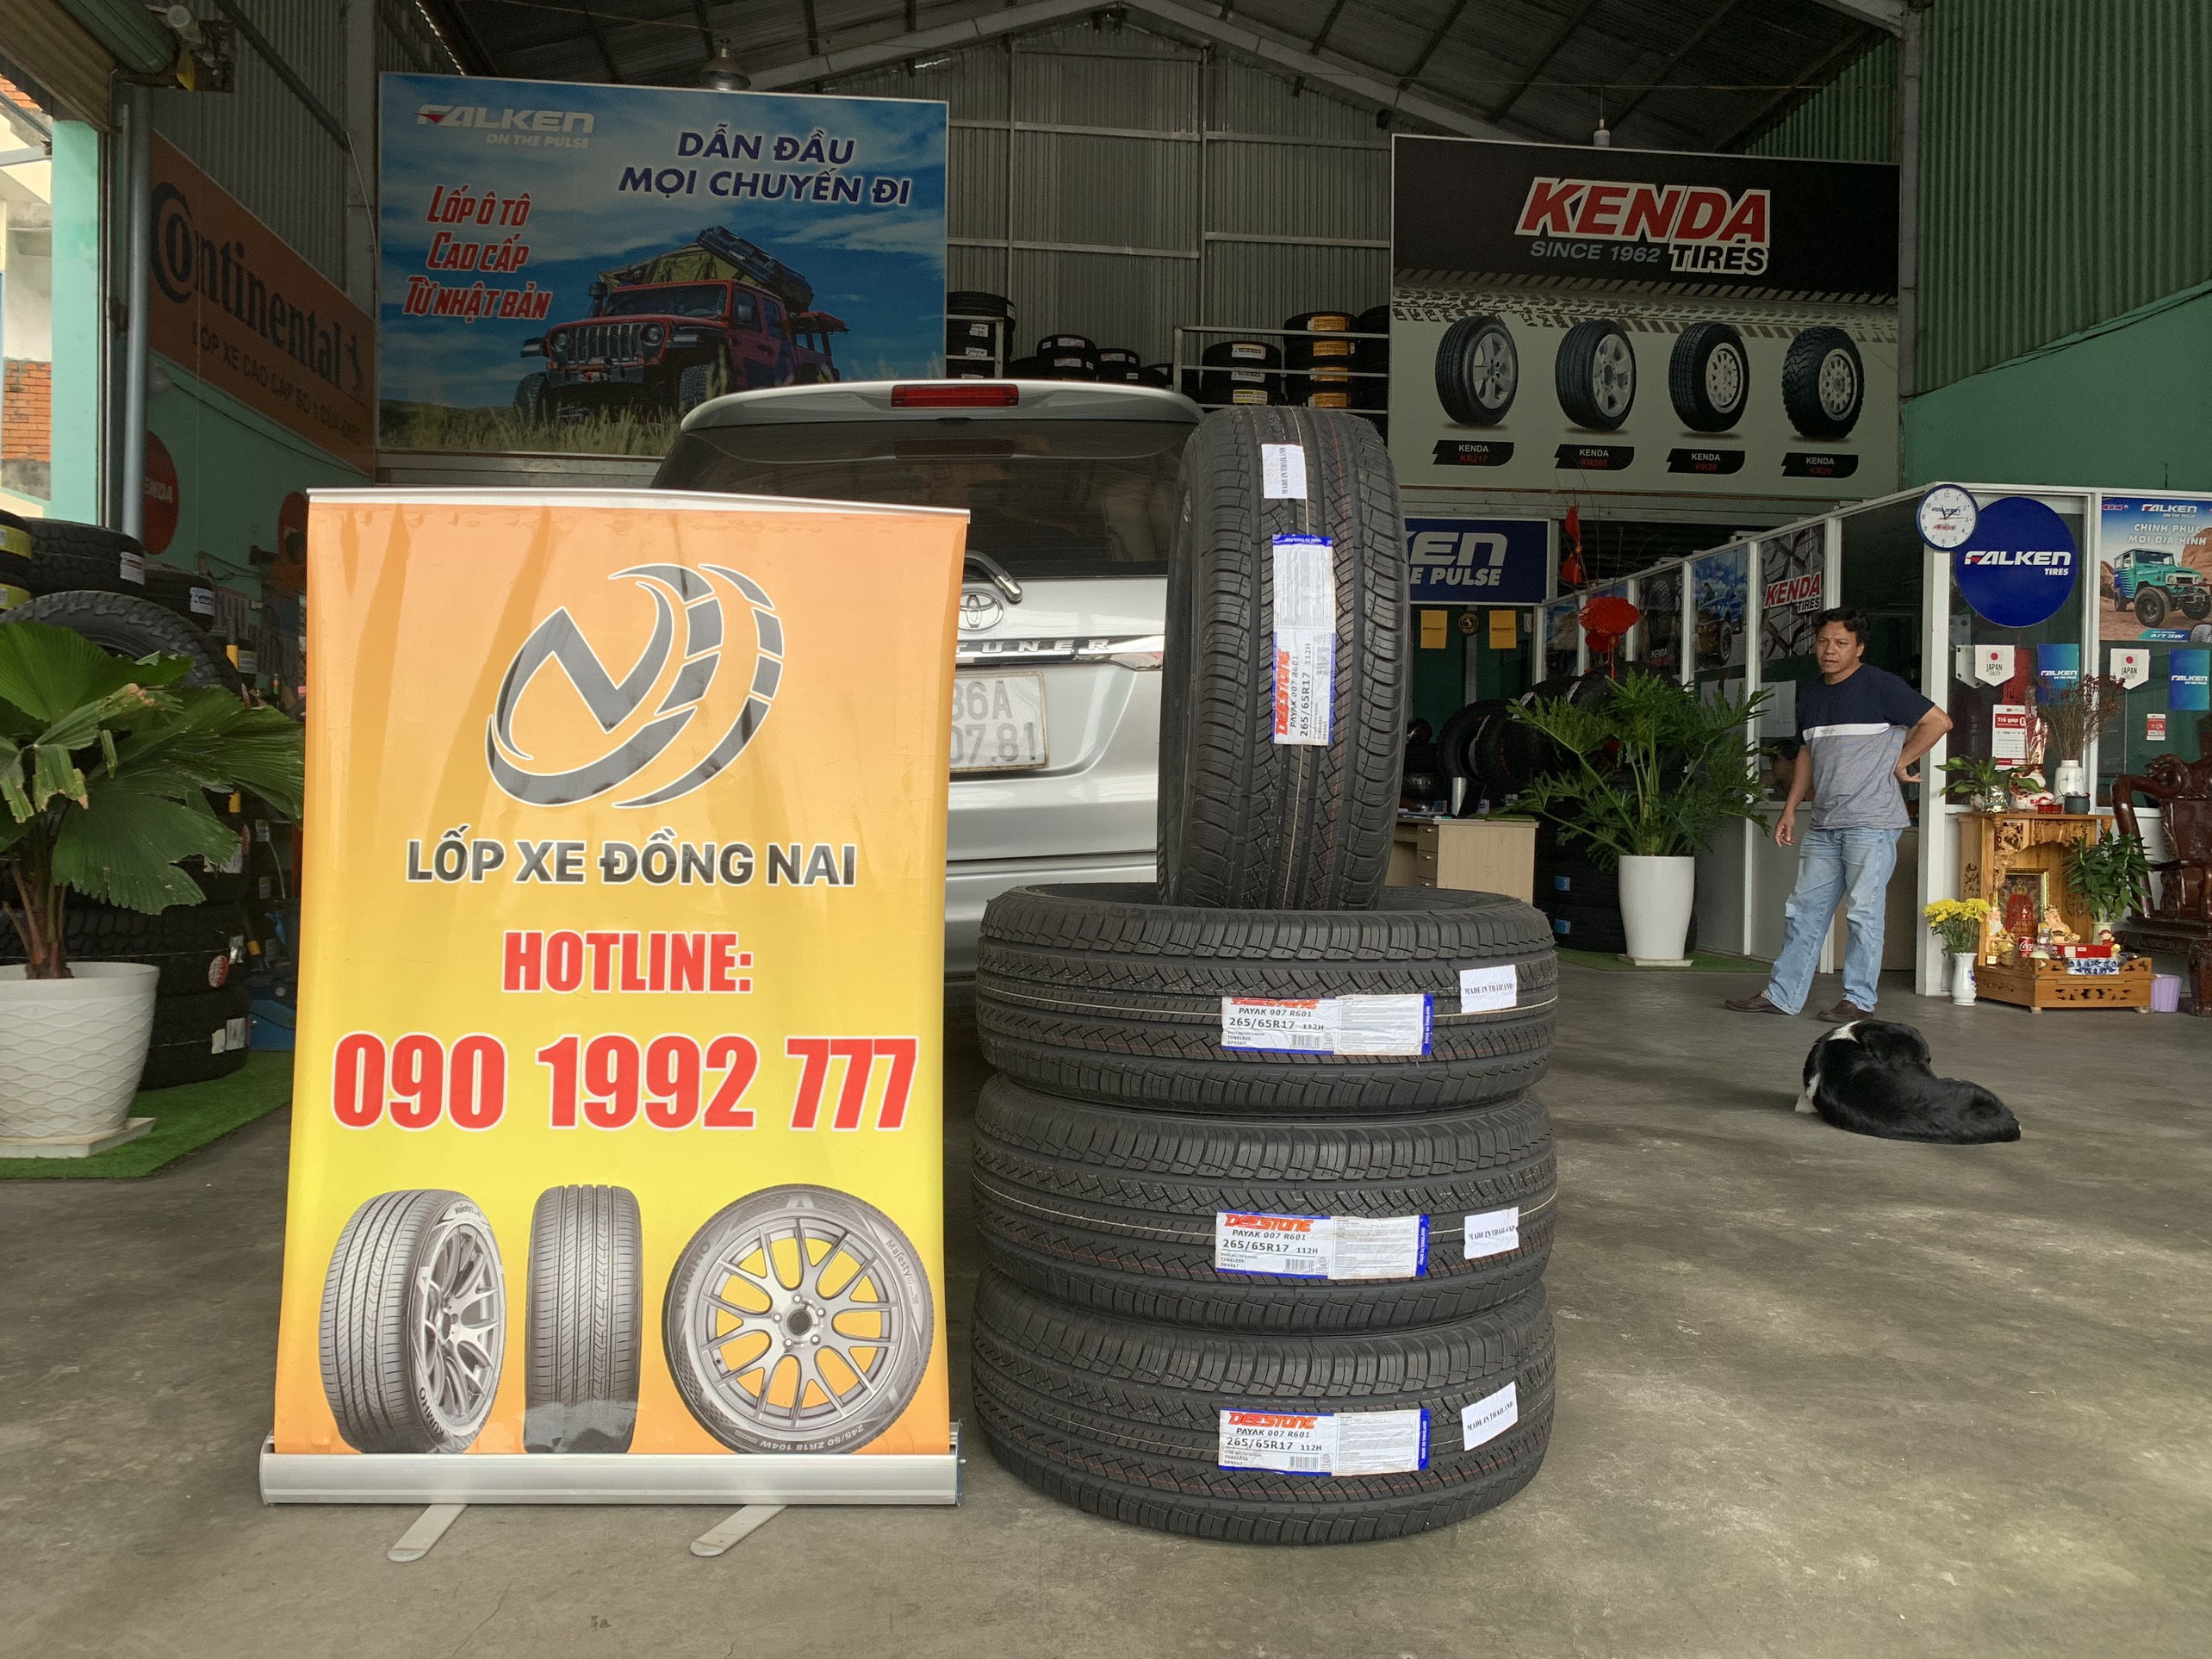 TƯ VẤN : Thay lốp xe Toyota Fortuner chính hãng ở Biên Hoà, Đồng Nai.